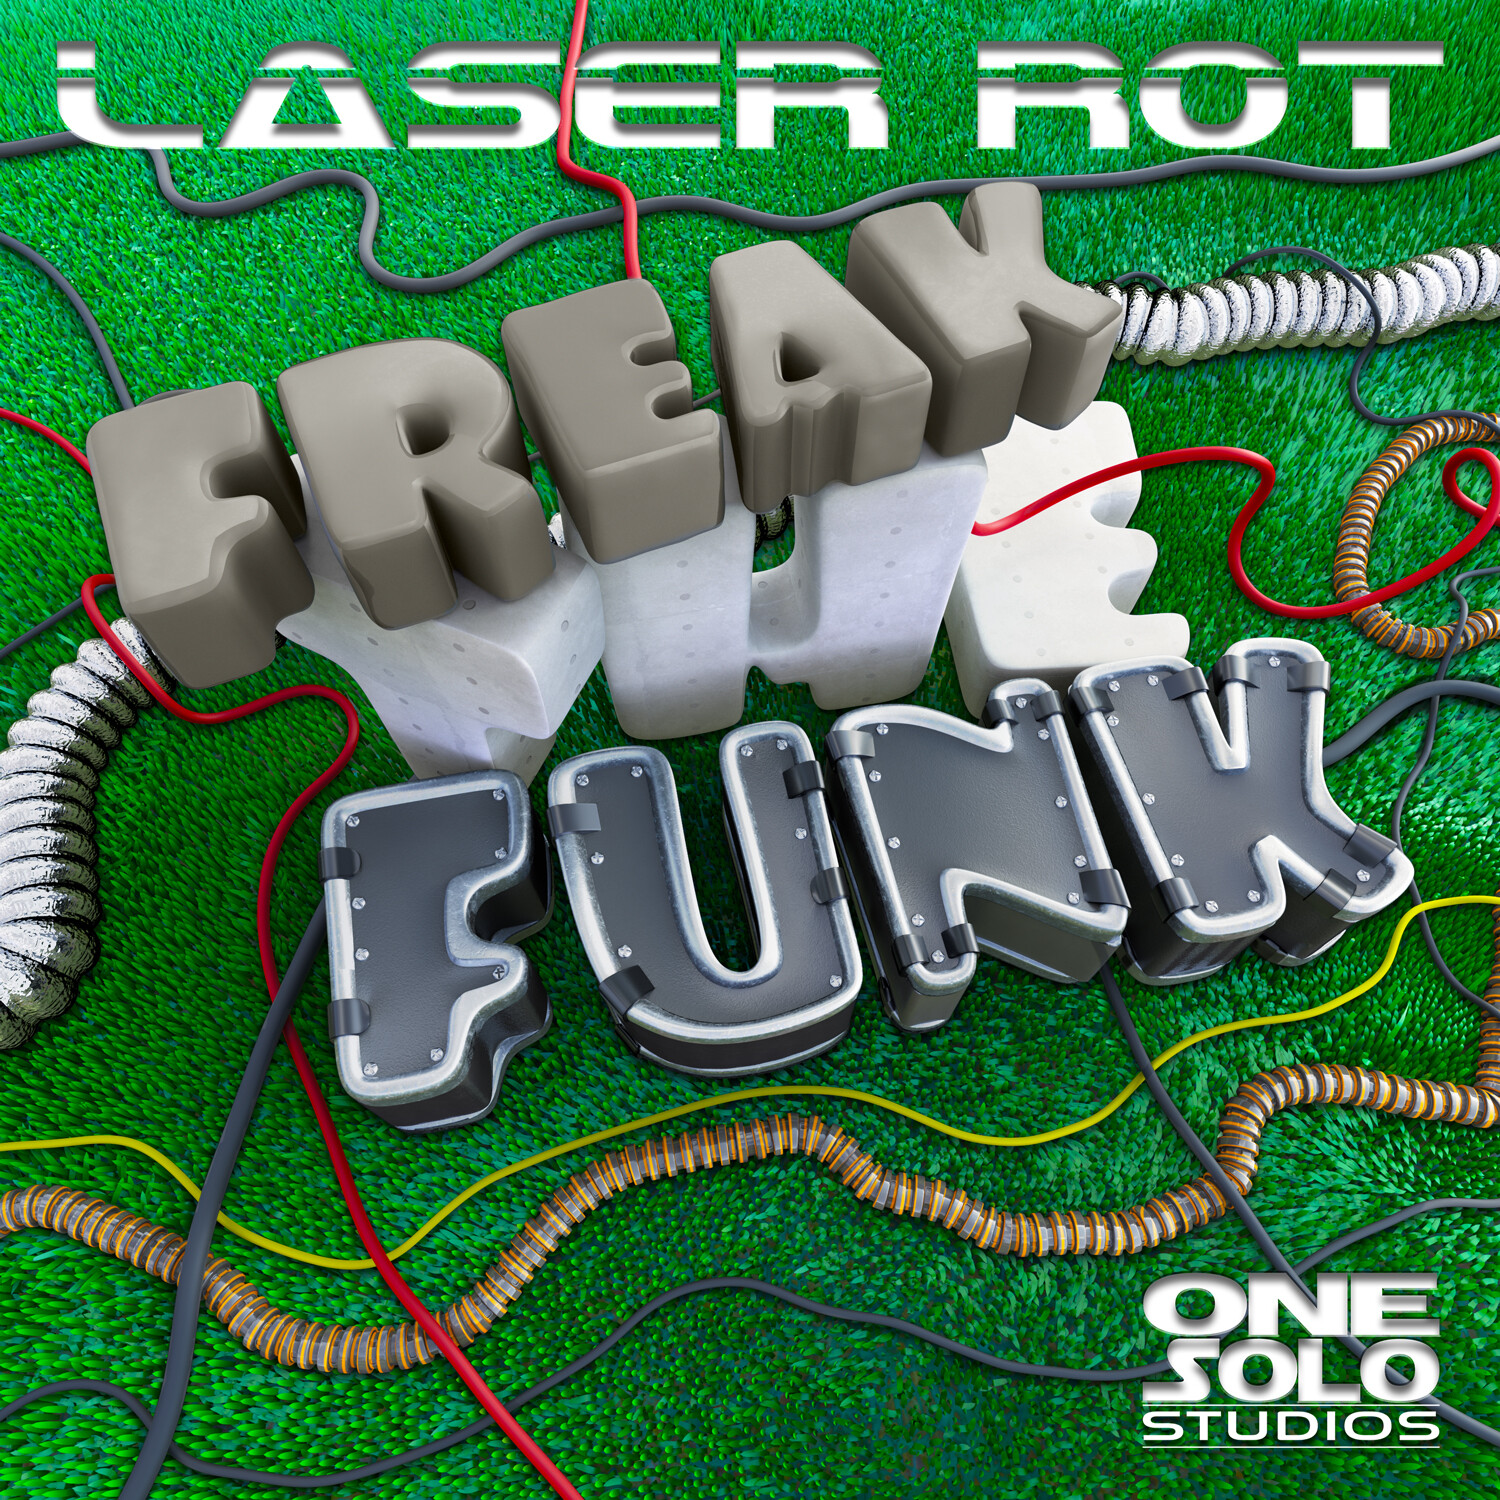 Freak The Funk (Album Cover Artwork)